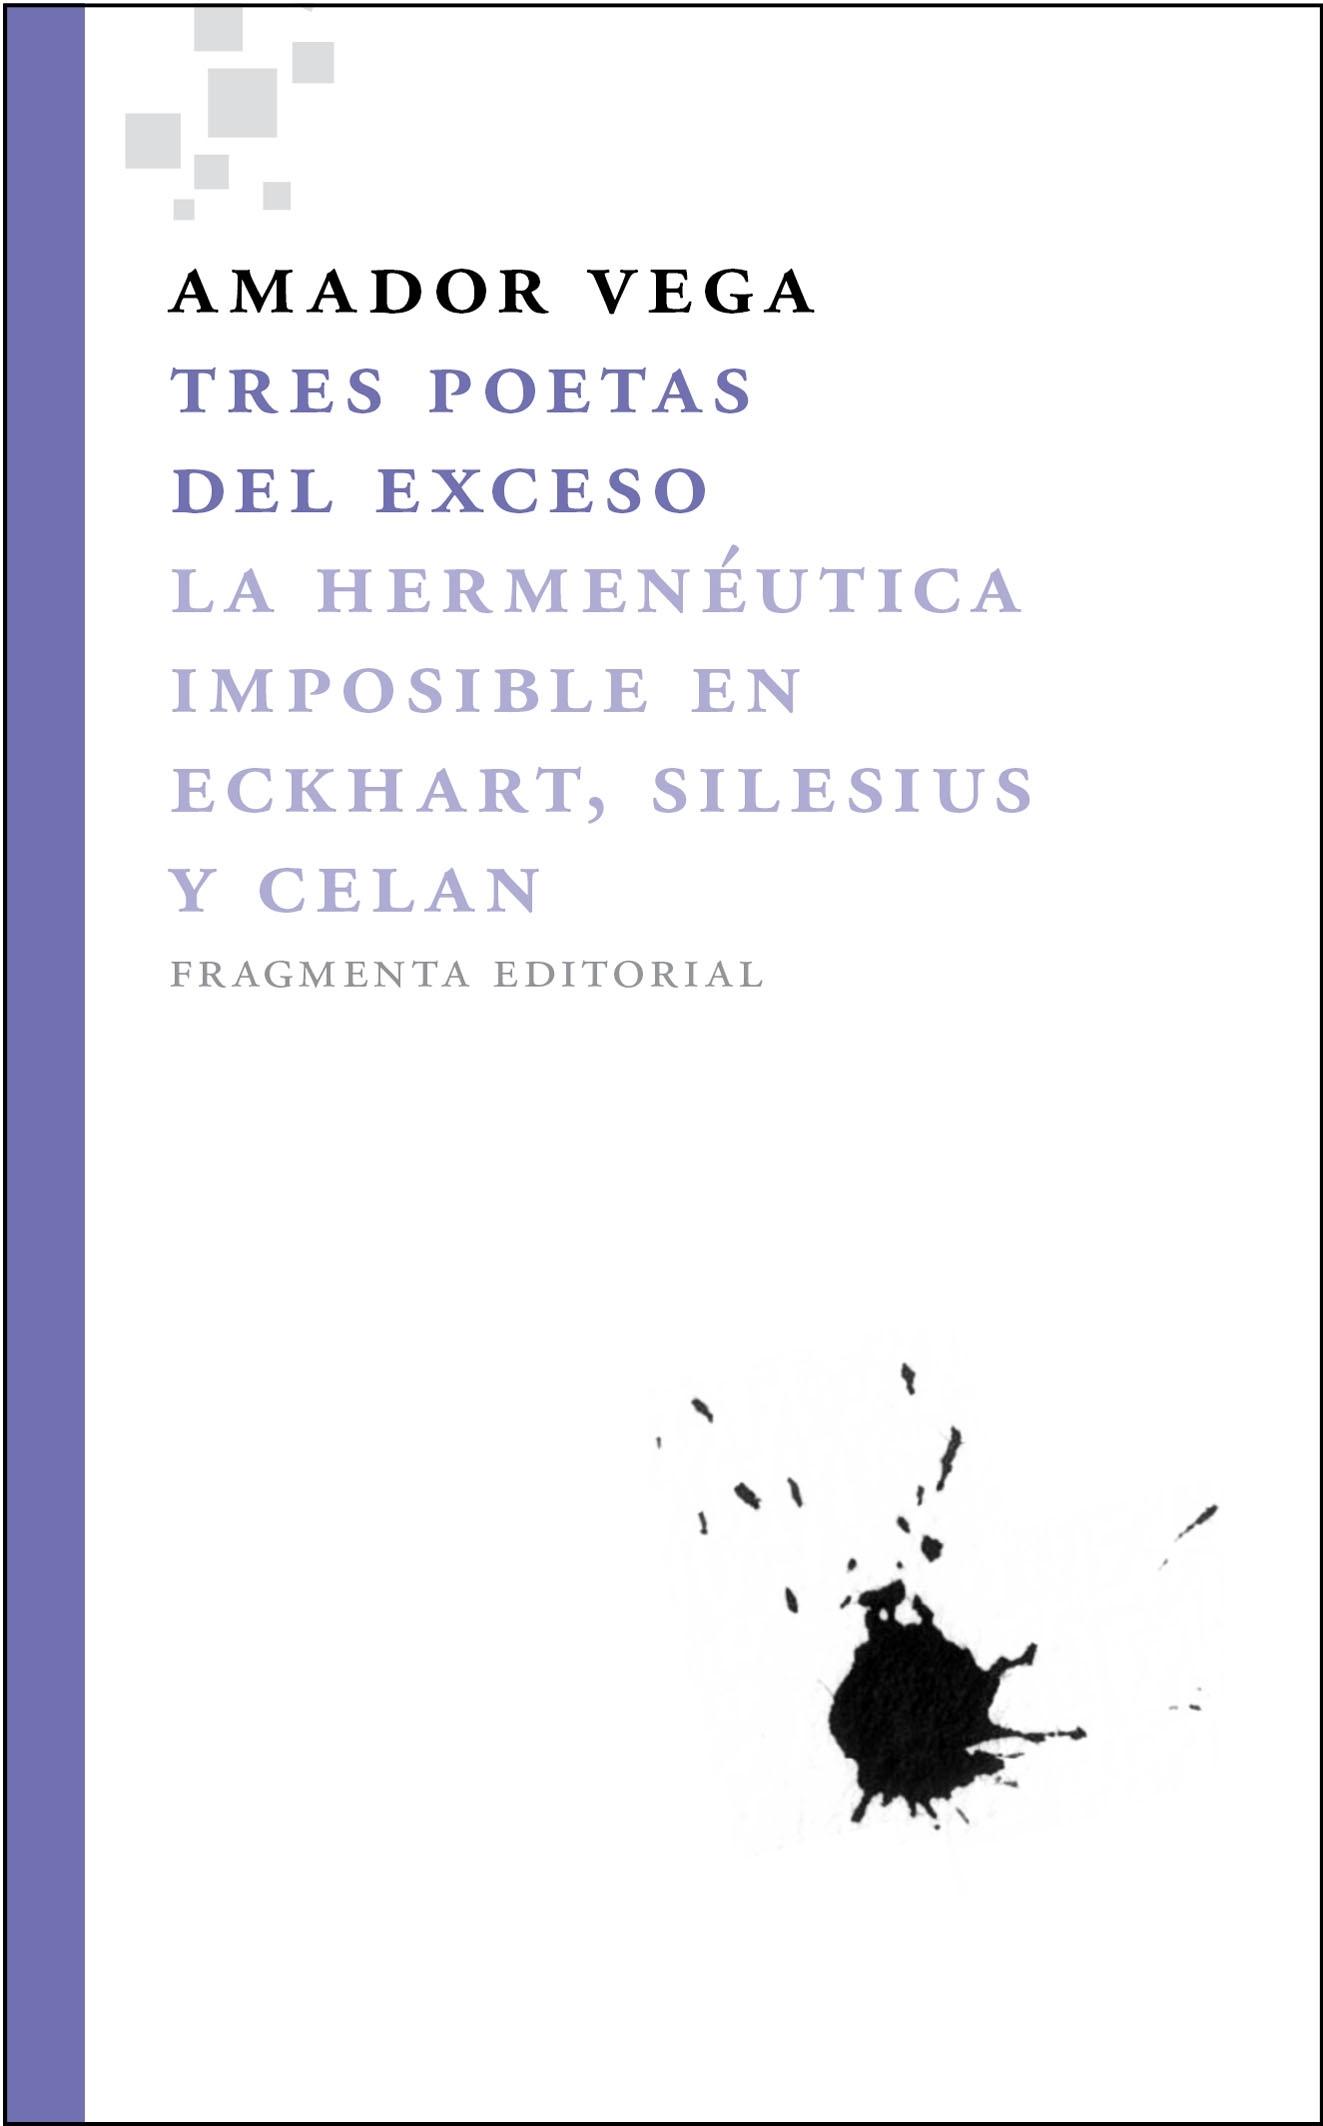 Tres Poetas del Exceso "La Hermenéutica Imposible en Eckhart, Silesius y Celan". 